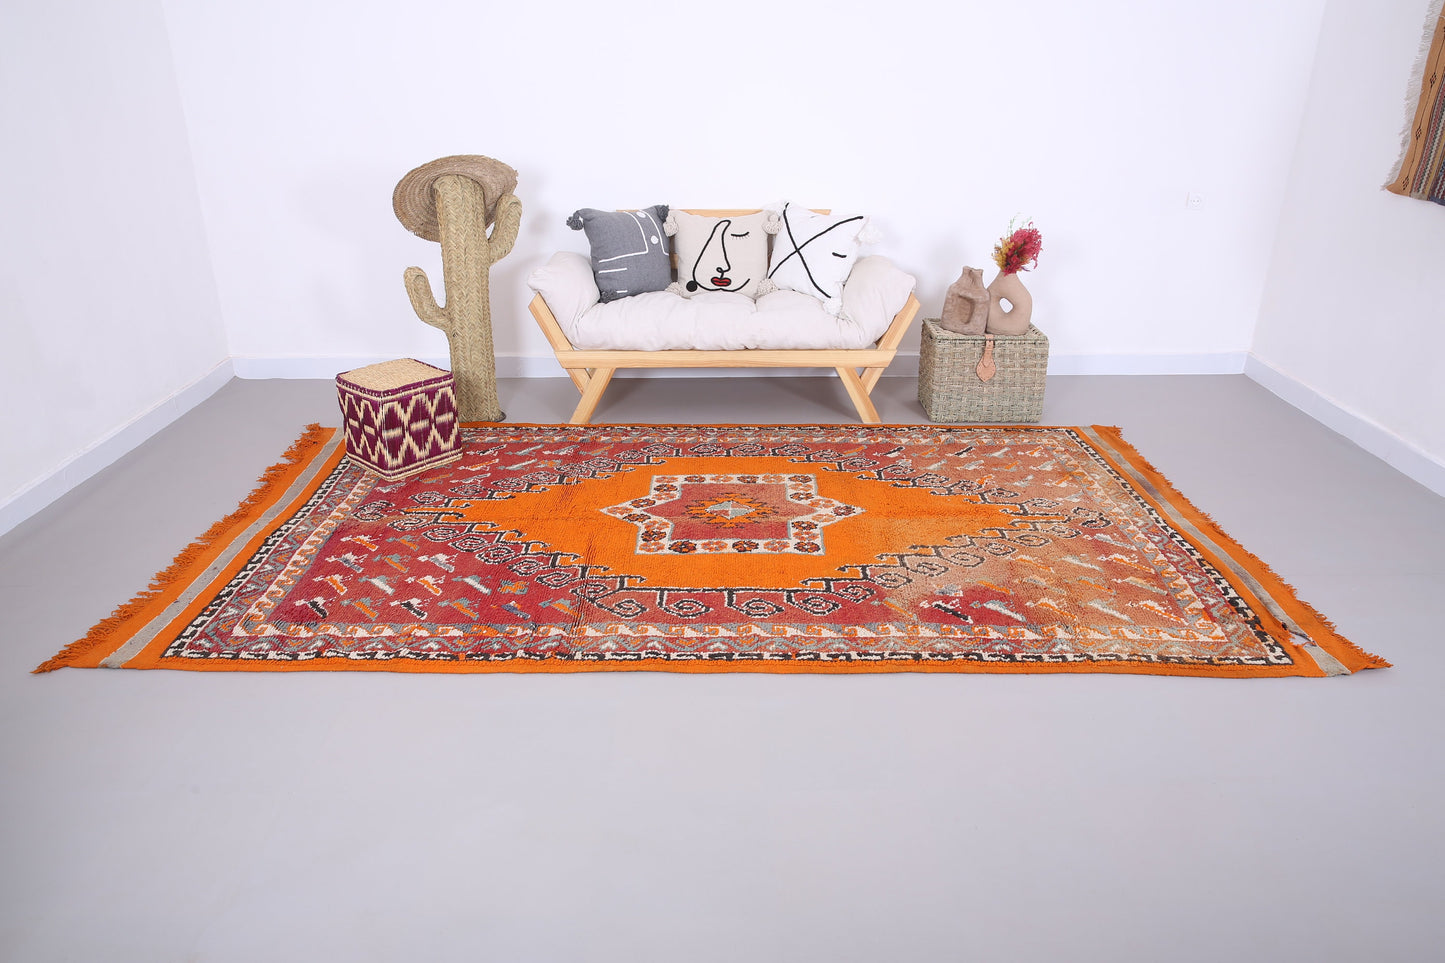 Vintage marokkanischer Teppich 5,8 FT x 10,2 FT - Vintage marokkanischer Teppich - handgemachter Wollteppich - 80er Jahre Teppich - alter Boho Teppich - oranger und roter Tribal Teppich